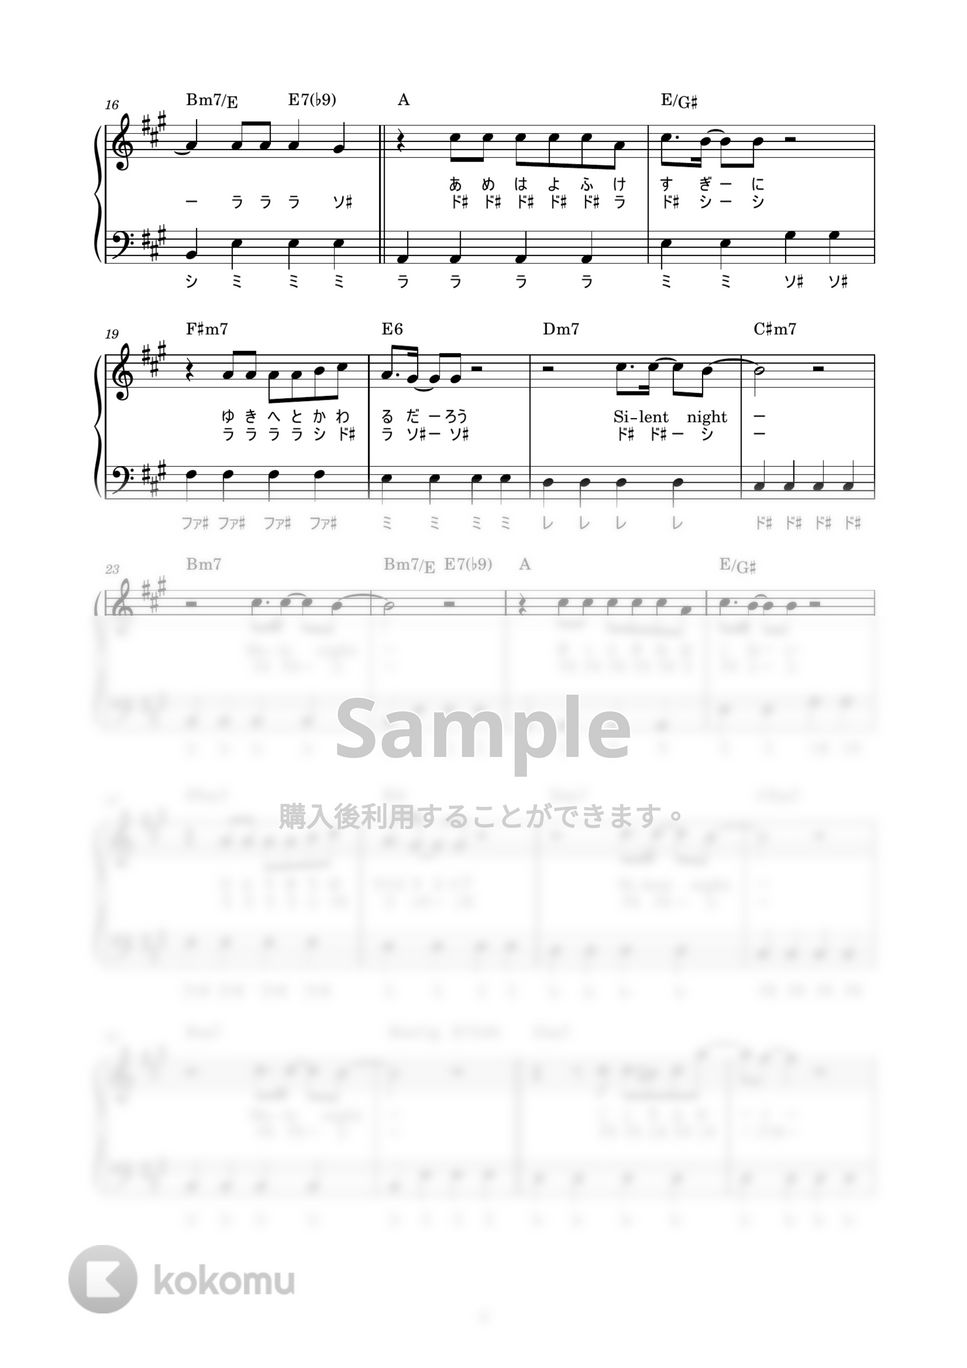 山下達郎 - クリスマス・イブ (かんたん / 歌詞付き / ドレミ付き / 初心者) by piano.tokyo